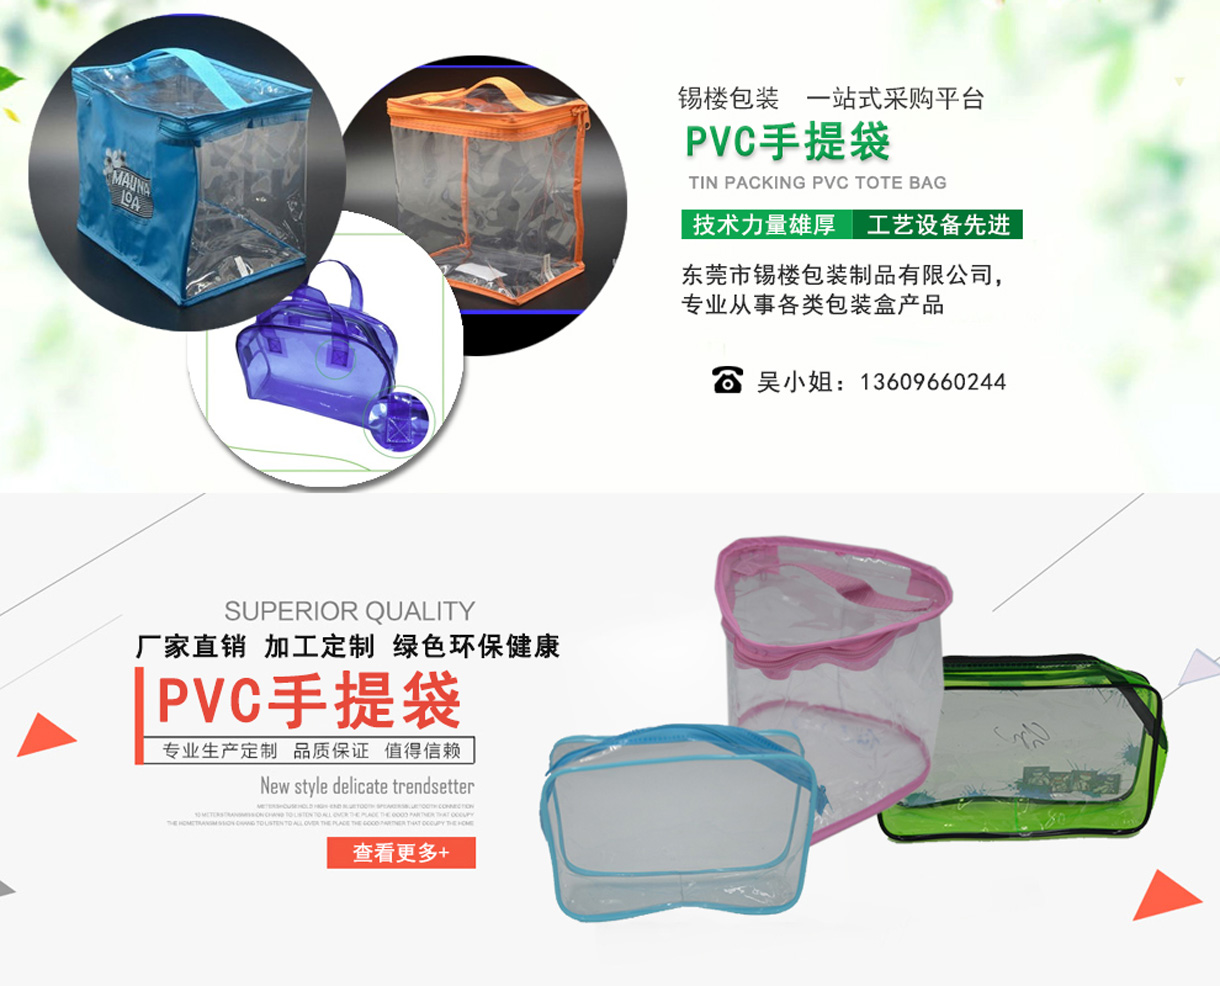 东莞市锡楼包装制品有限公司-中国国际包装展-中国包装容器展